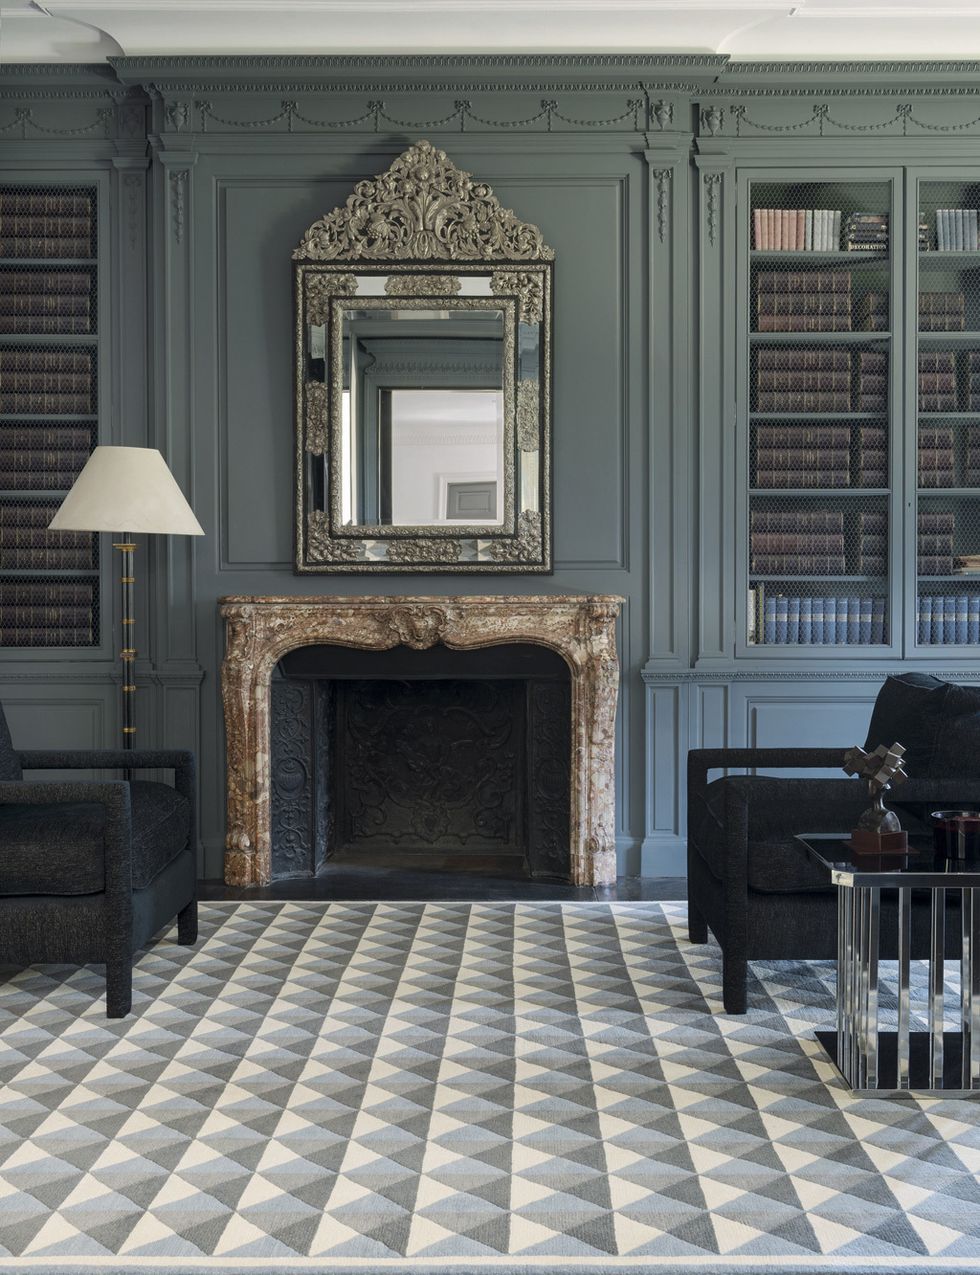 <p>
La famosa Casa de los Picos ha inspirado <i>Segovia</i>, uno de los diseños de Lorenzo del Castillo para la nueva colección de The Rug Company, que evoca épocas históricas.<br /><a href="http://www.alfombrasbsb.com" target="_blank">www.alfombrasbsb.com</a>&nbsp;</p>